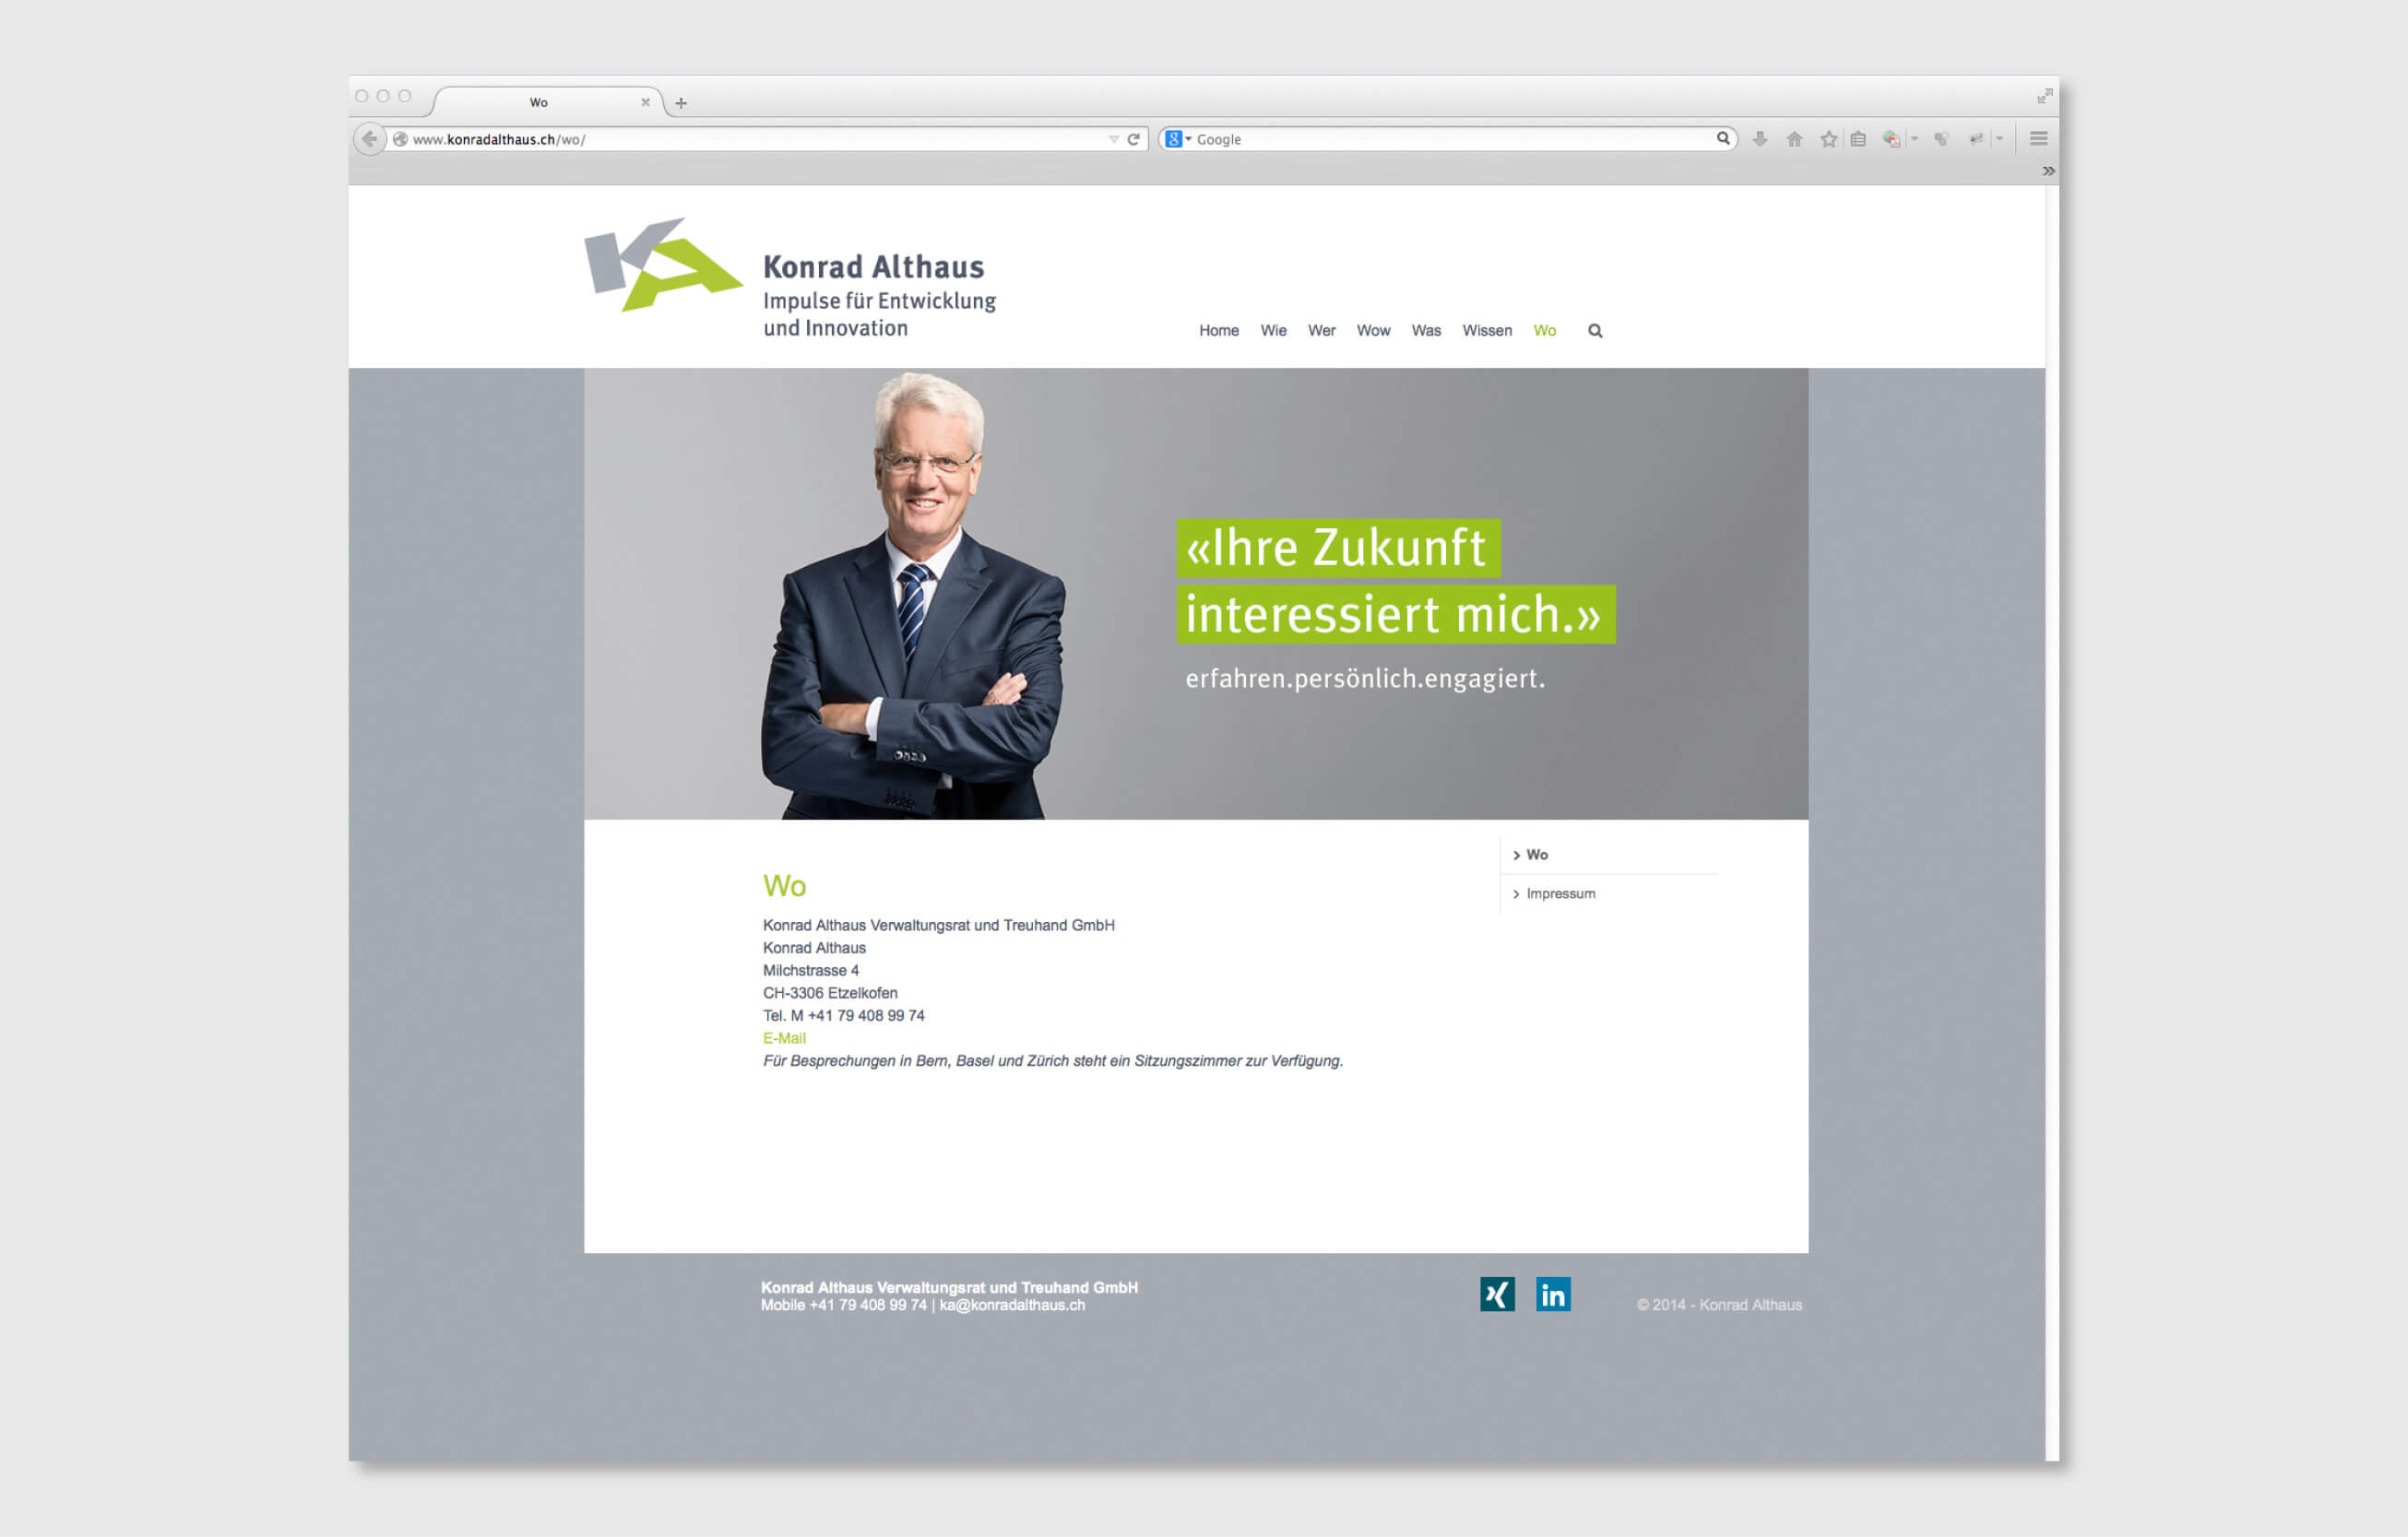 Konrad Althaus webdesign consign identity